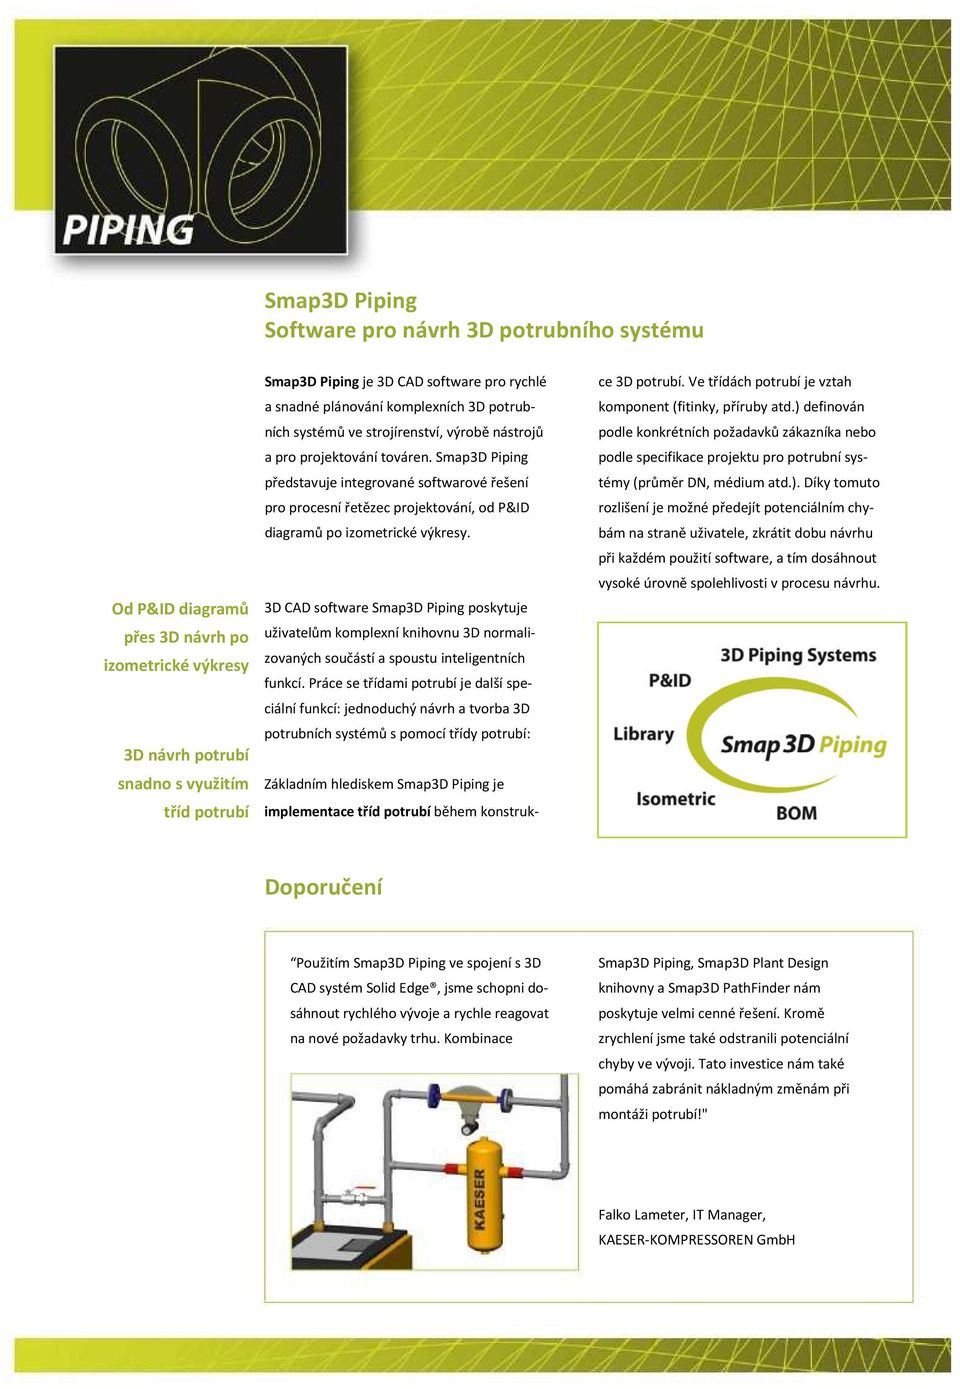 Smap3D Piping představuje integrované softwarové řešení pro procesní řetězec projektování, od P&ID diagramů po izometrické výkresy.